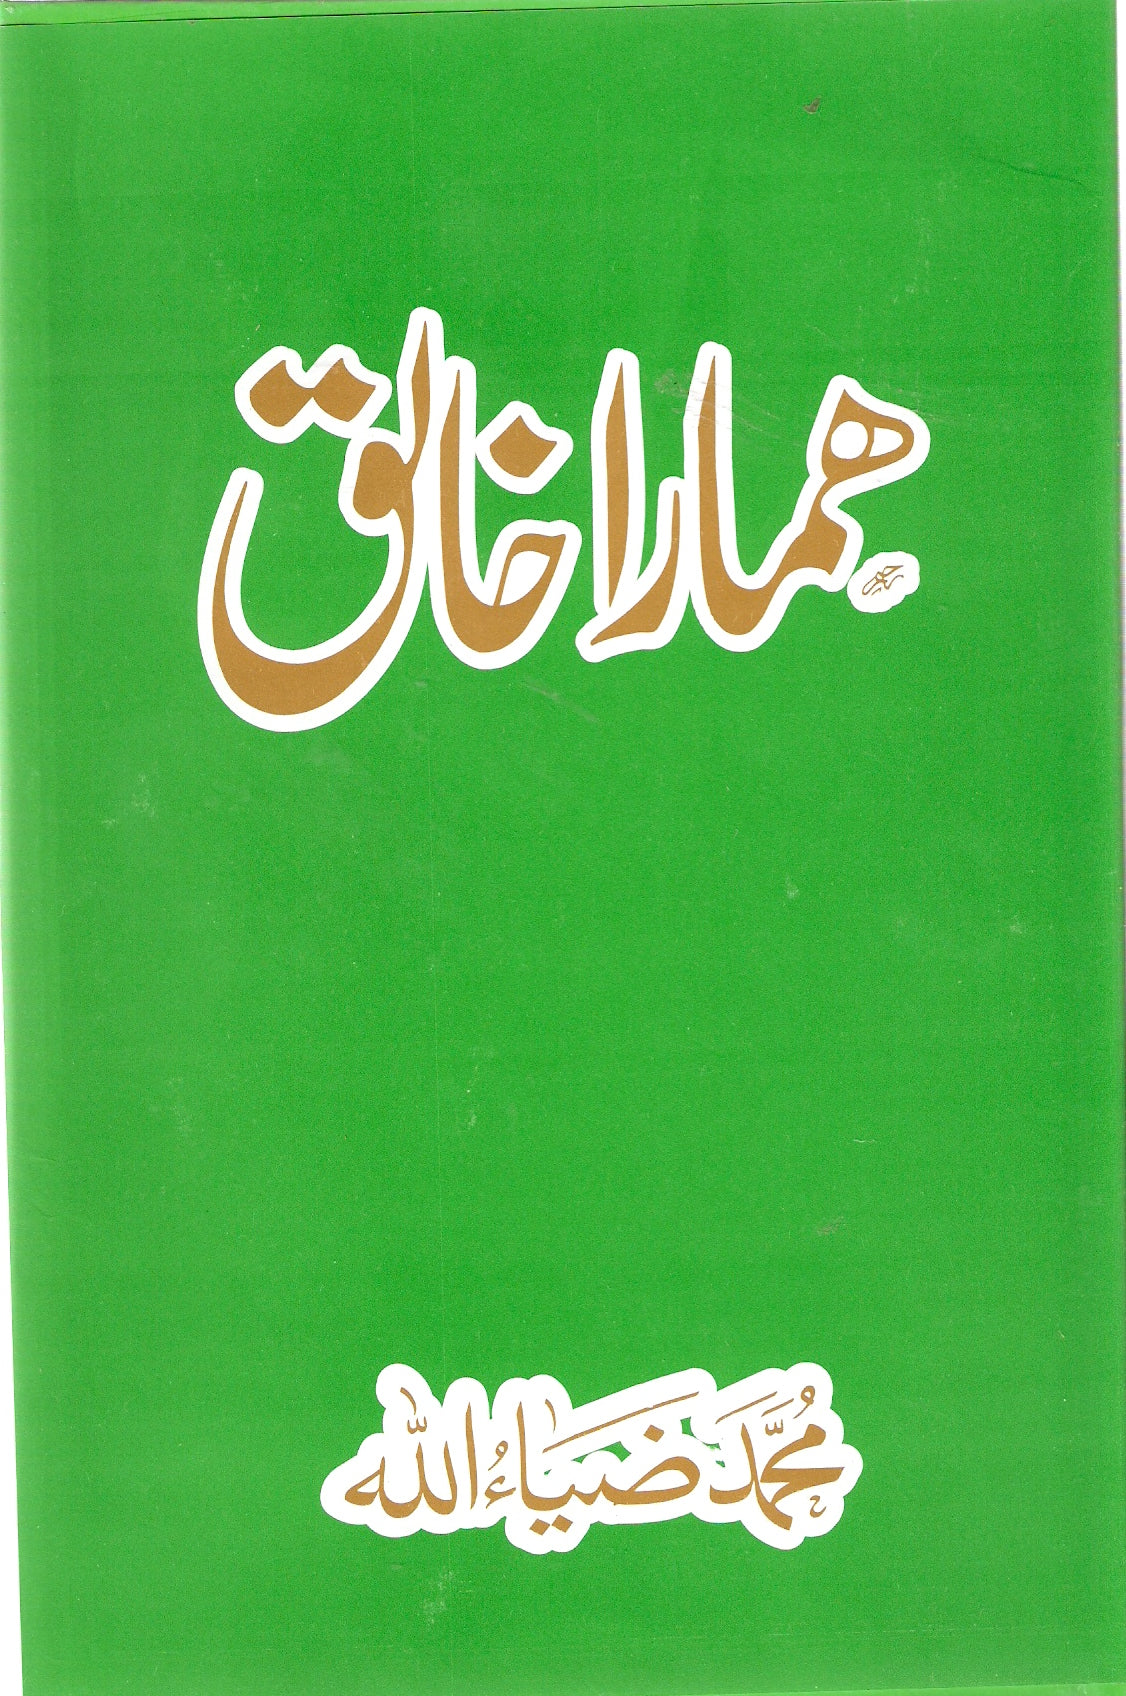 Hamara Khaliq